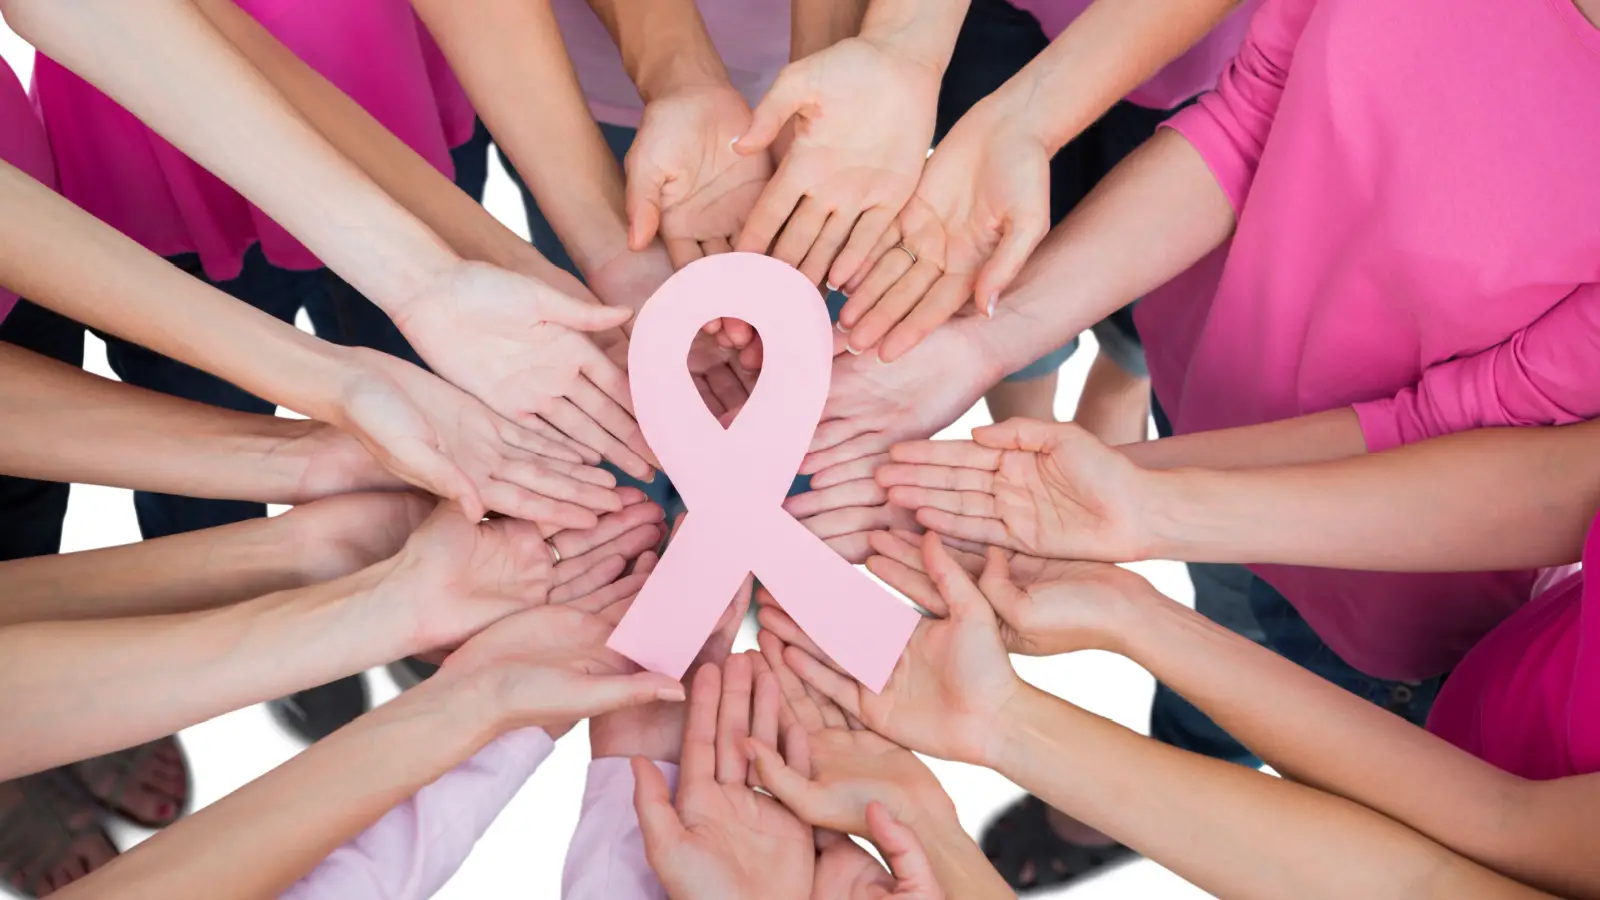 ما خطوات فحص سرطان الثدي الذاتي؟